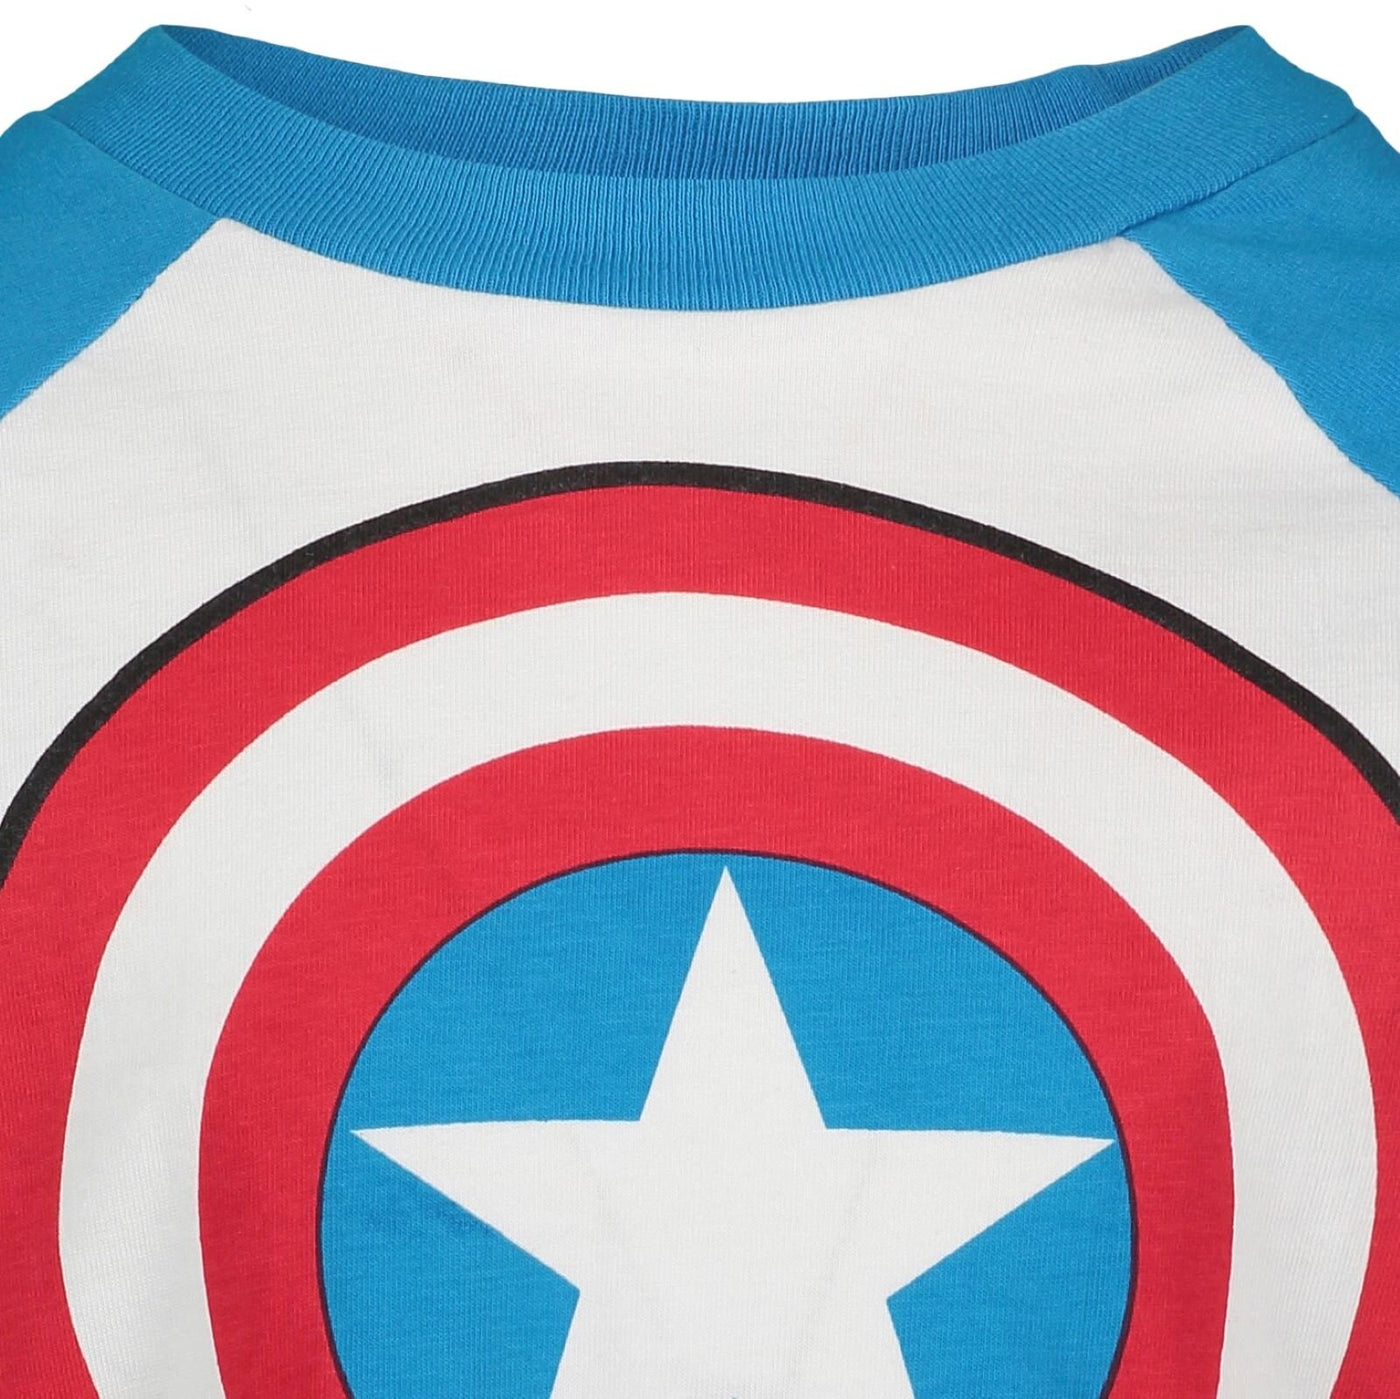 Marvel Avengers Captain America 2 Pack Long Sleeve T-Shirts